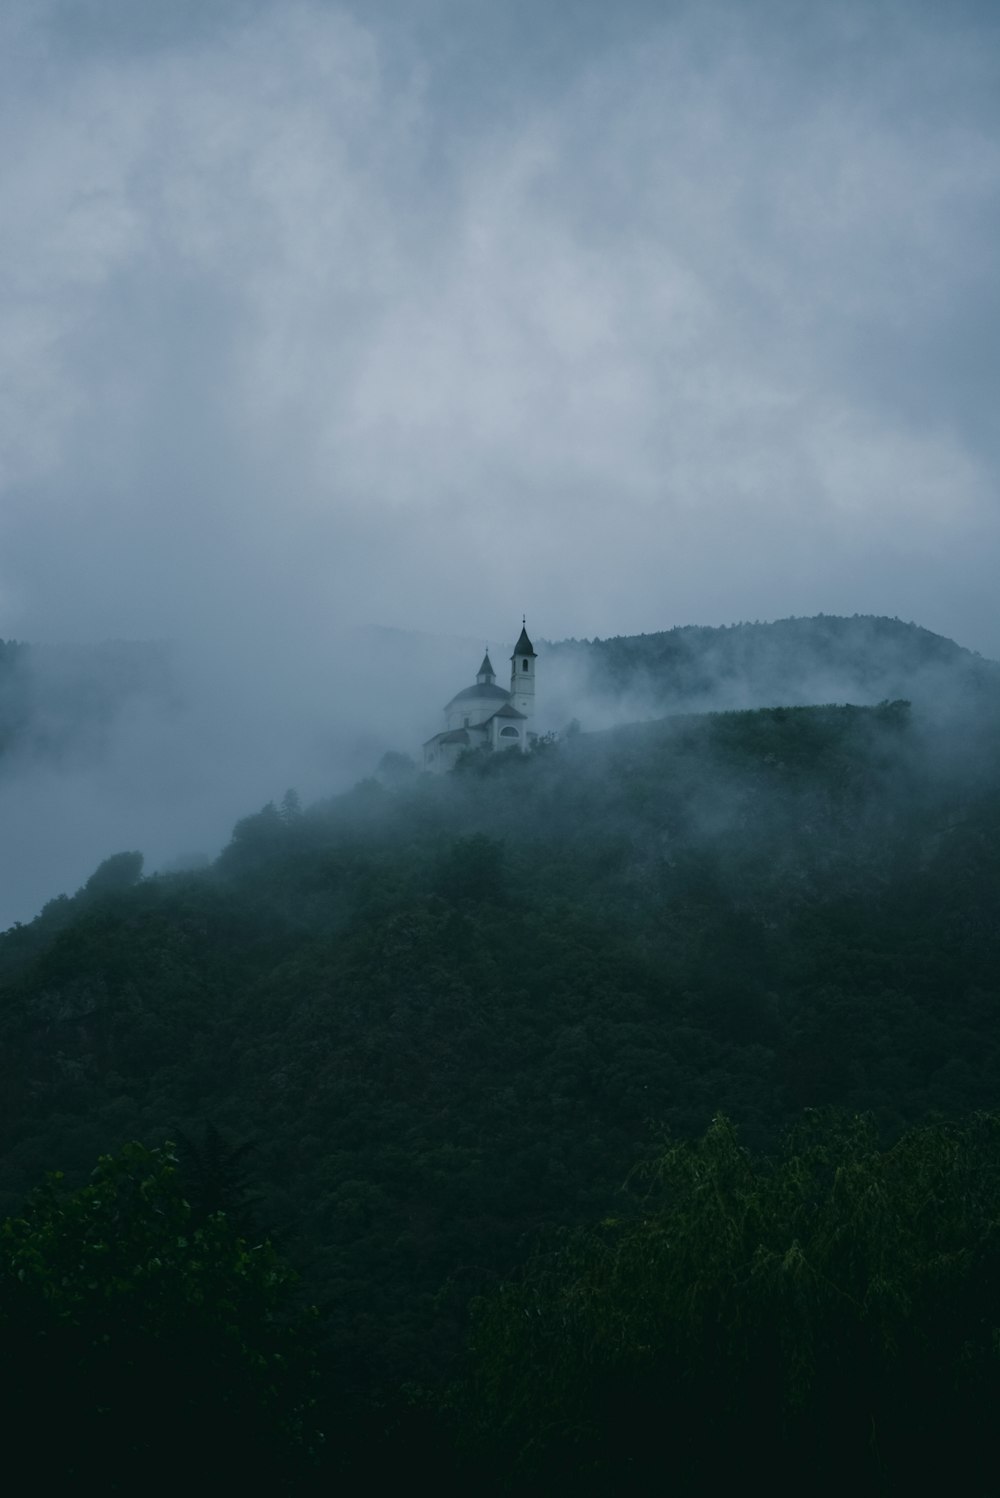 Una iglesia en la cima de una colina cubierta de niebla